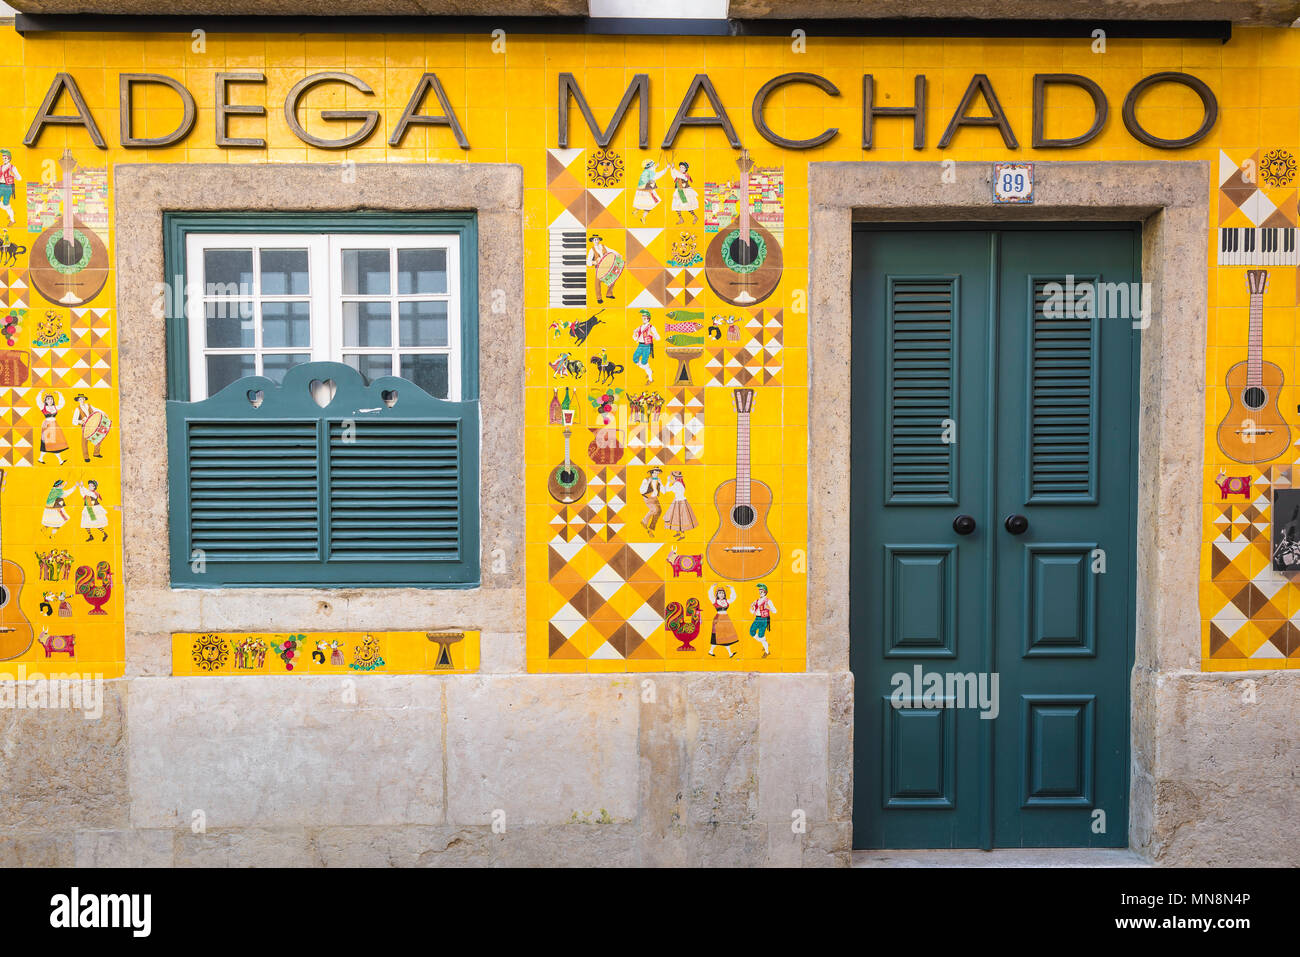 Fado Lisbona, vista della colorata facciata piastrella di Adega Machado, un rinomato fado bar nel quartiere Bairro Alto di Lisbona, Portogallo. Foto Stock